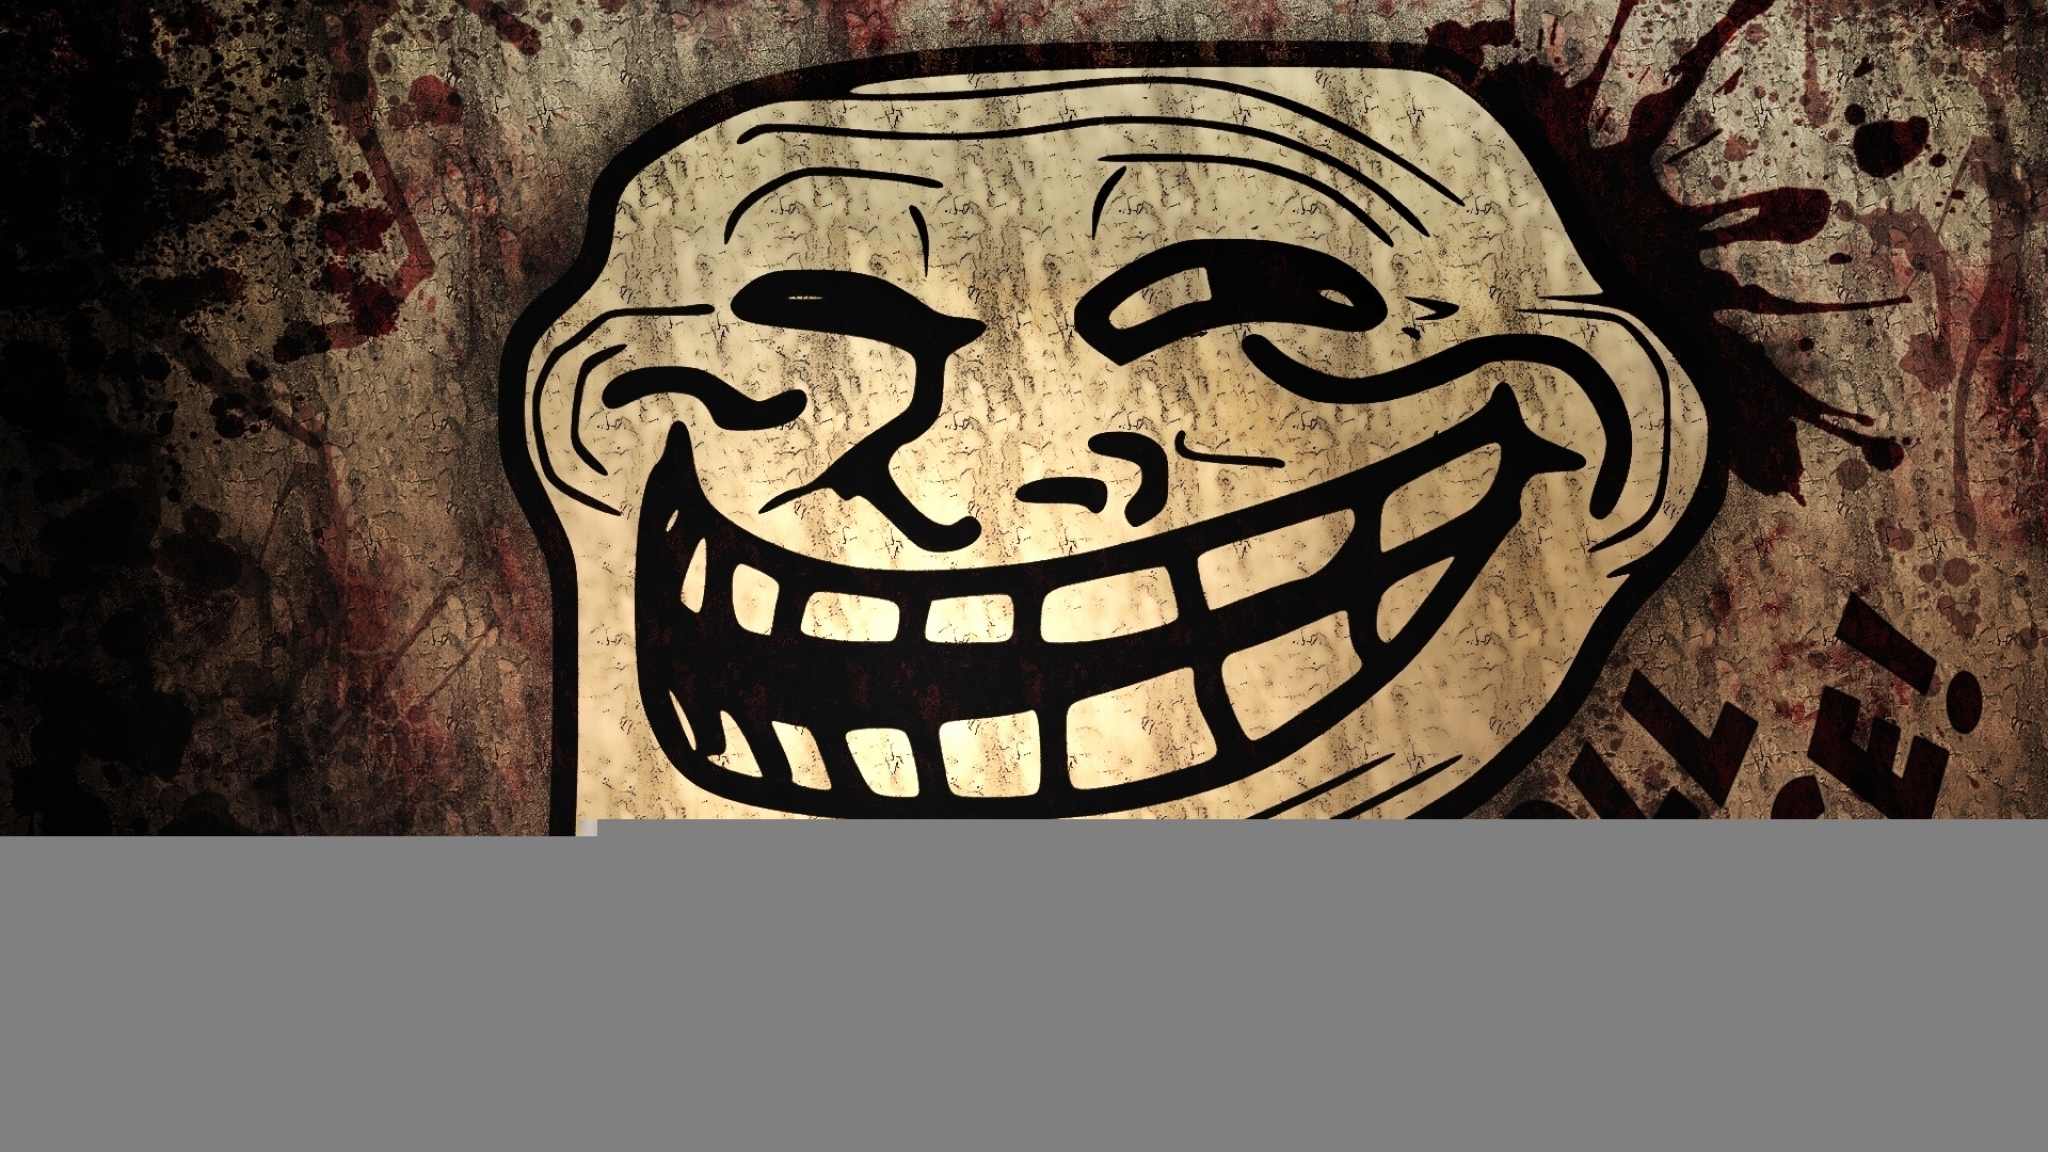 Ugly Troll Face Meme Fun Canvas Print (50cm x 40cm) : Amazon.de: Home &  Kitchen